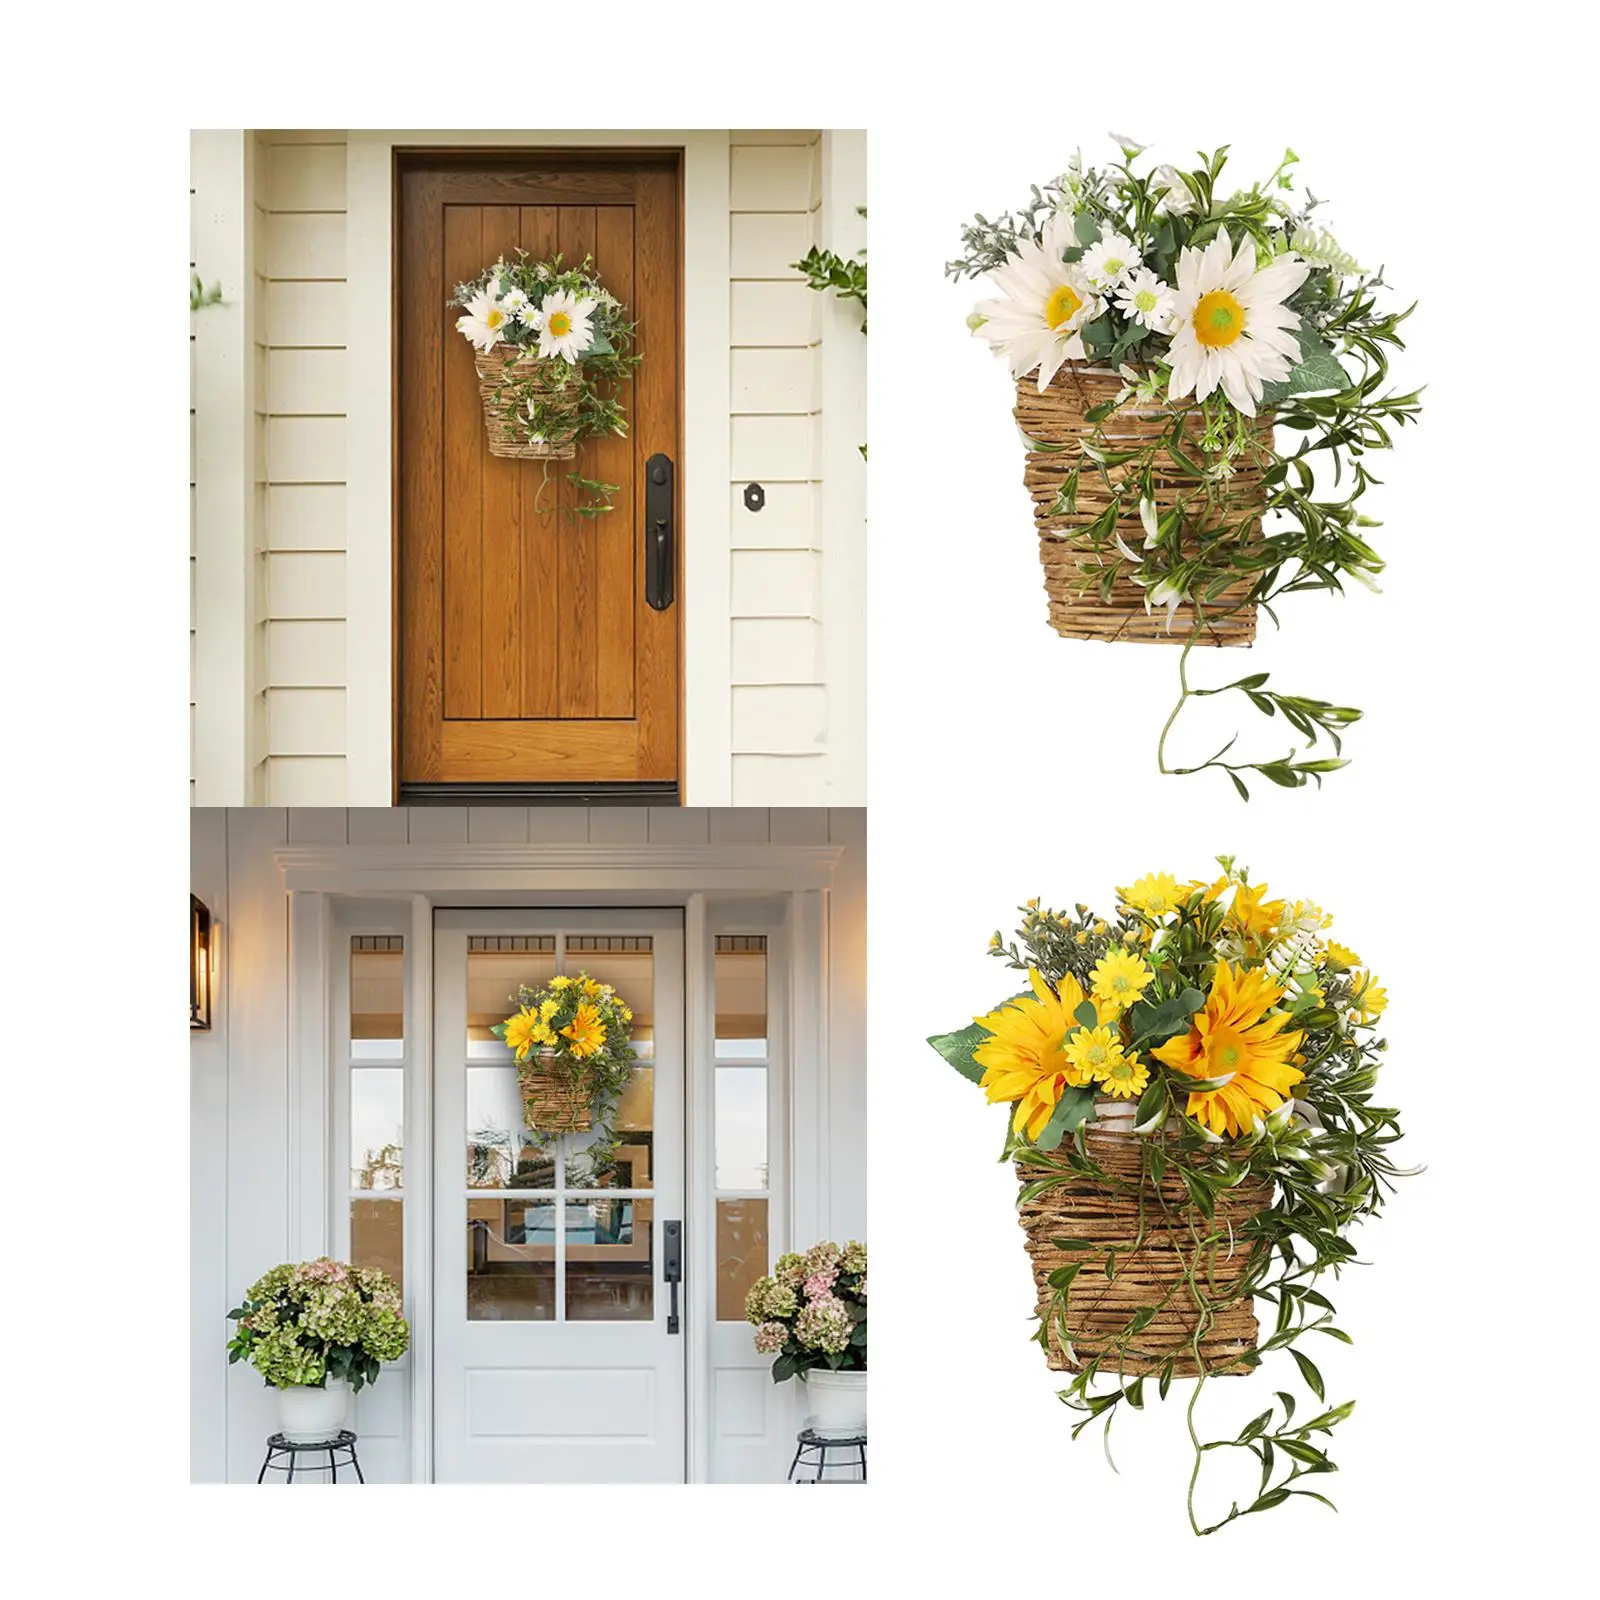 Flower Basket Wreath Sunflowers Wreath Welcome Sign Front Door Spring Wreath